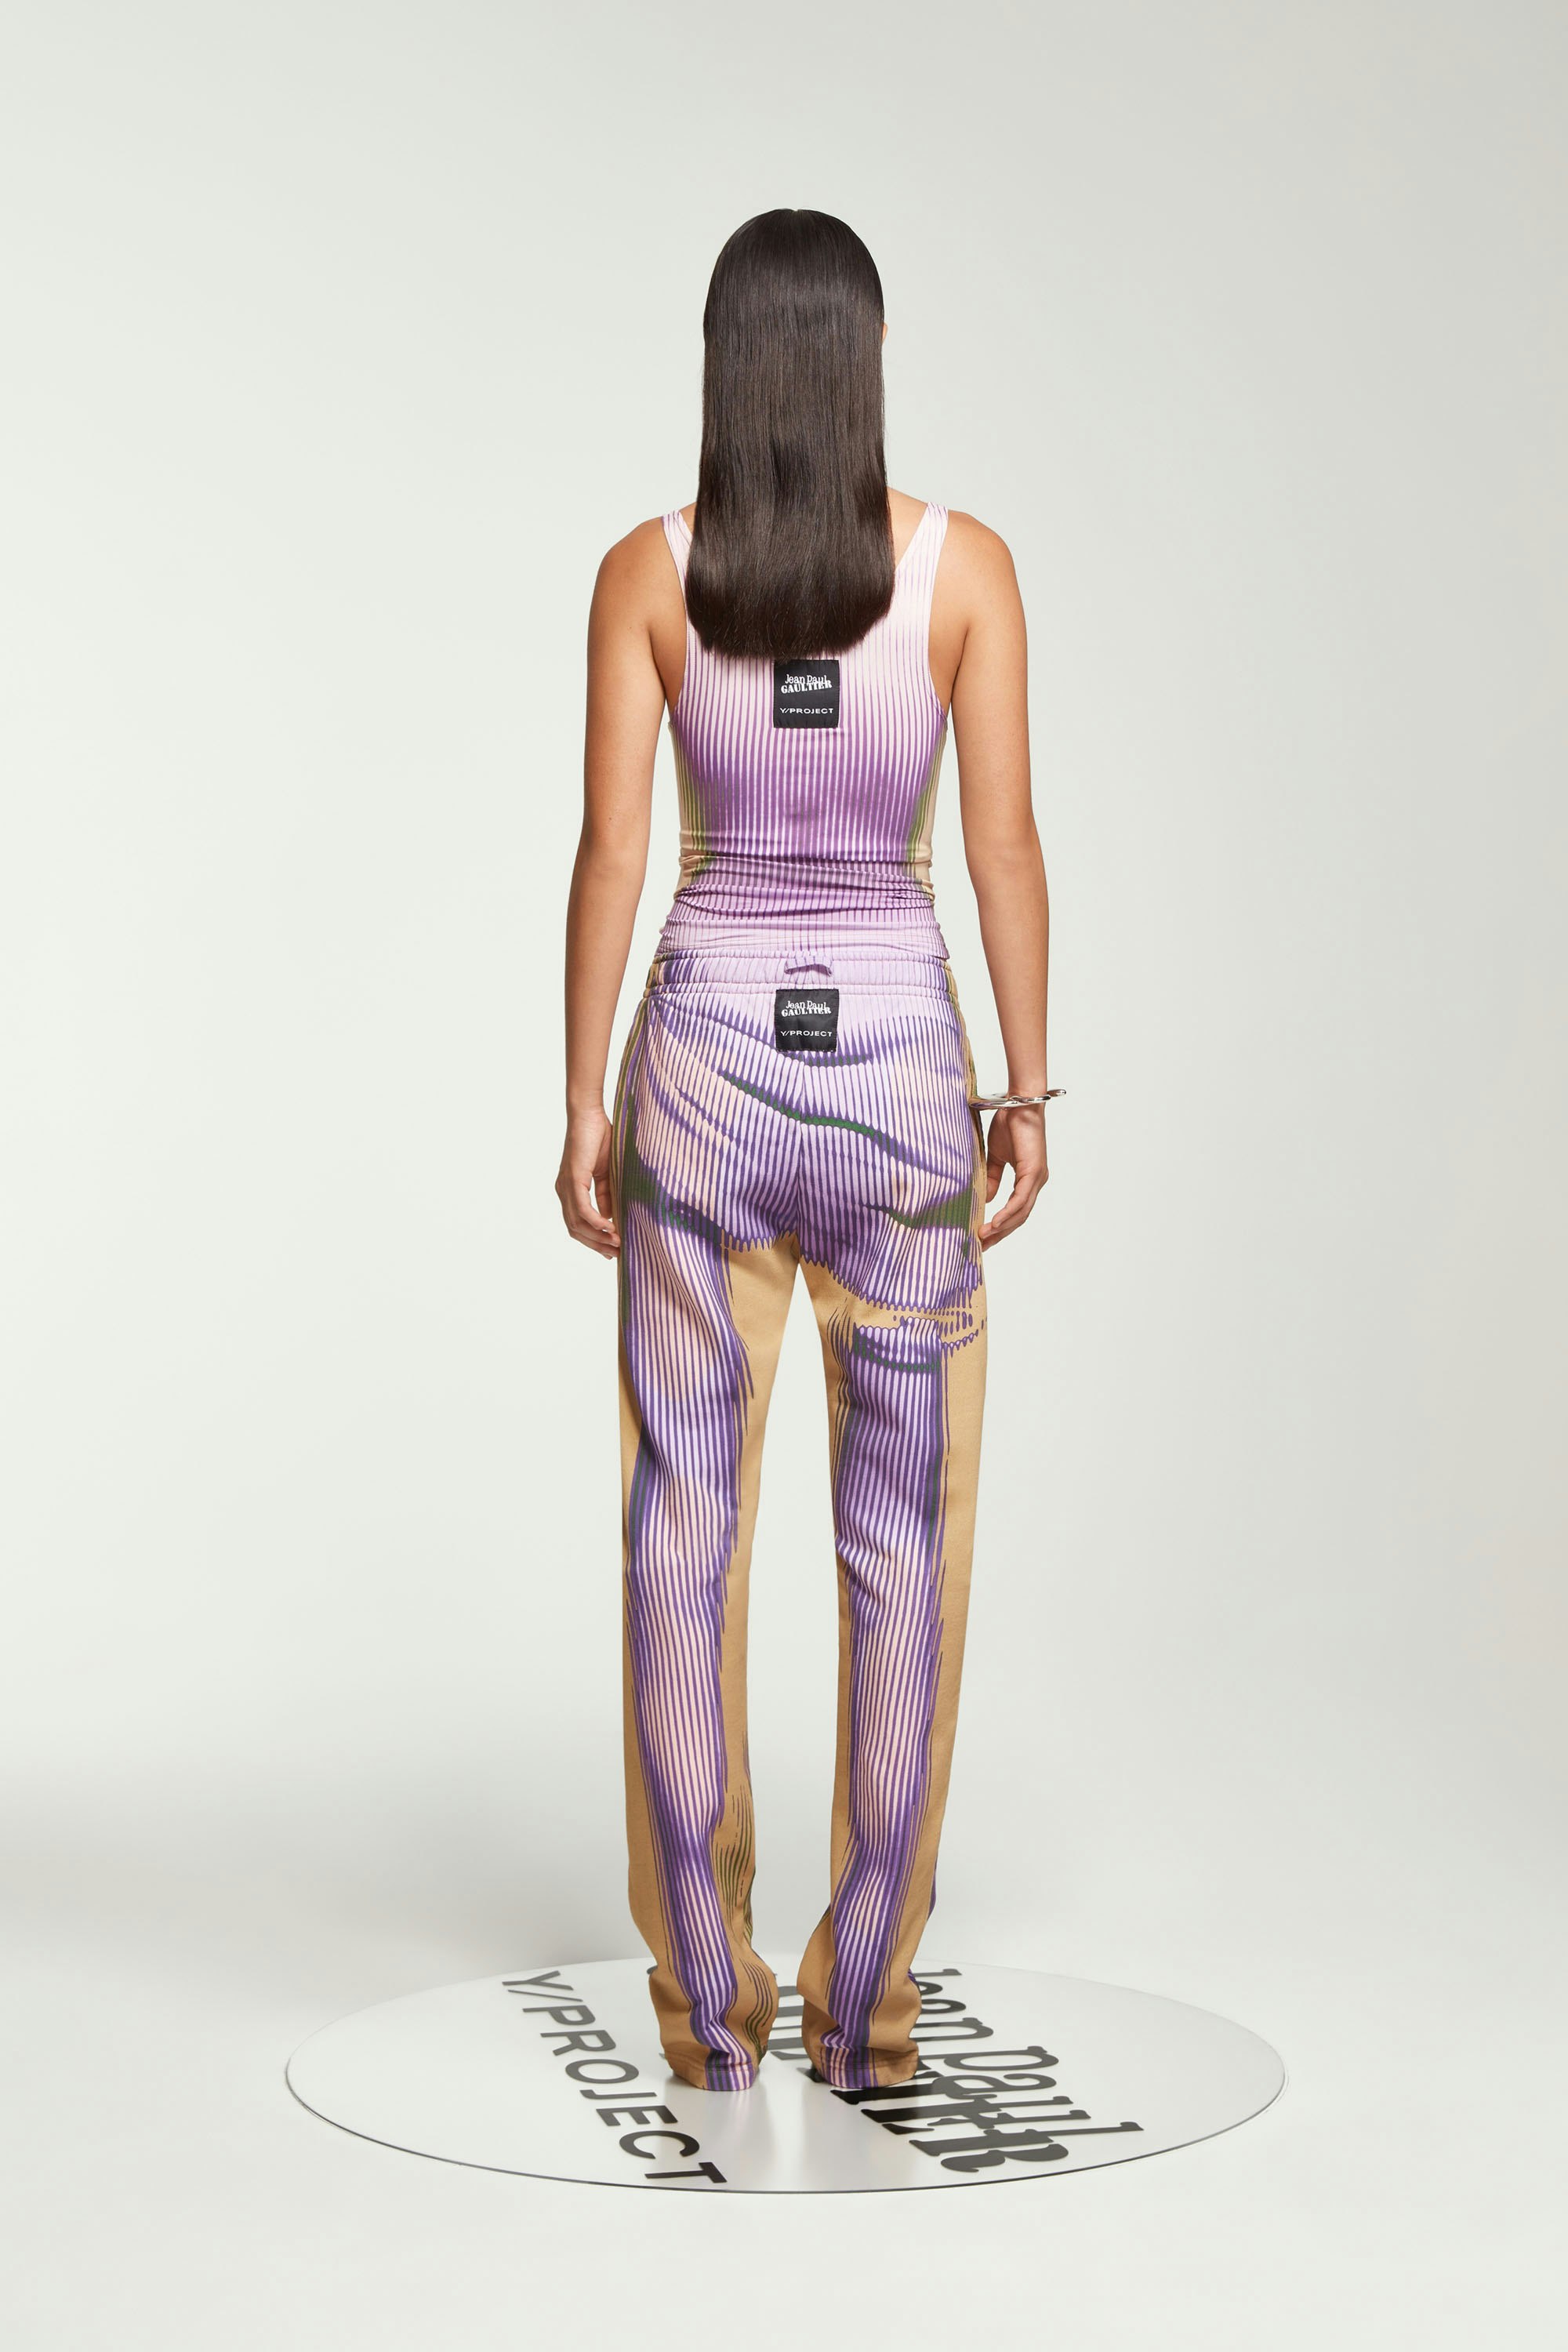 The Purple & Yellow Body Morph Sweatpants by Jean Paul Gaultier x Y/Project